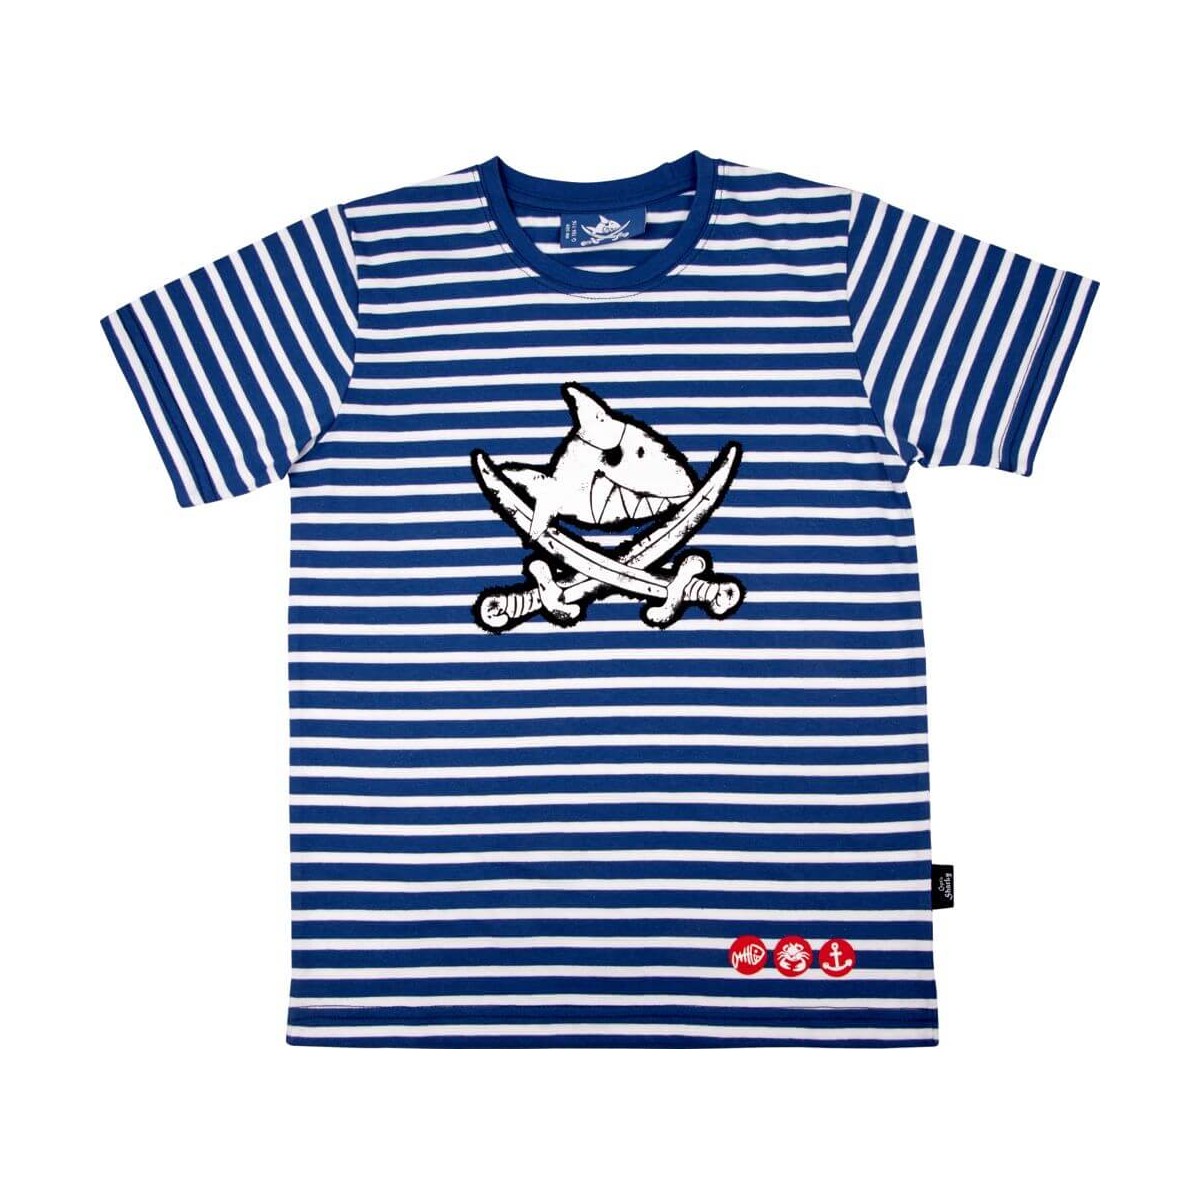 Die Spiegelburg   Capt n Sharky   T Shirt, one size, Gr.104 116